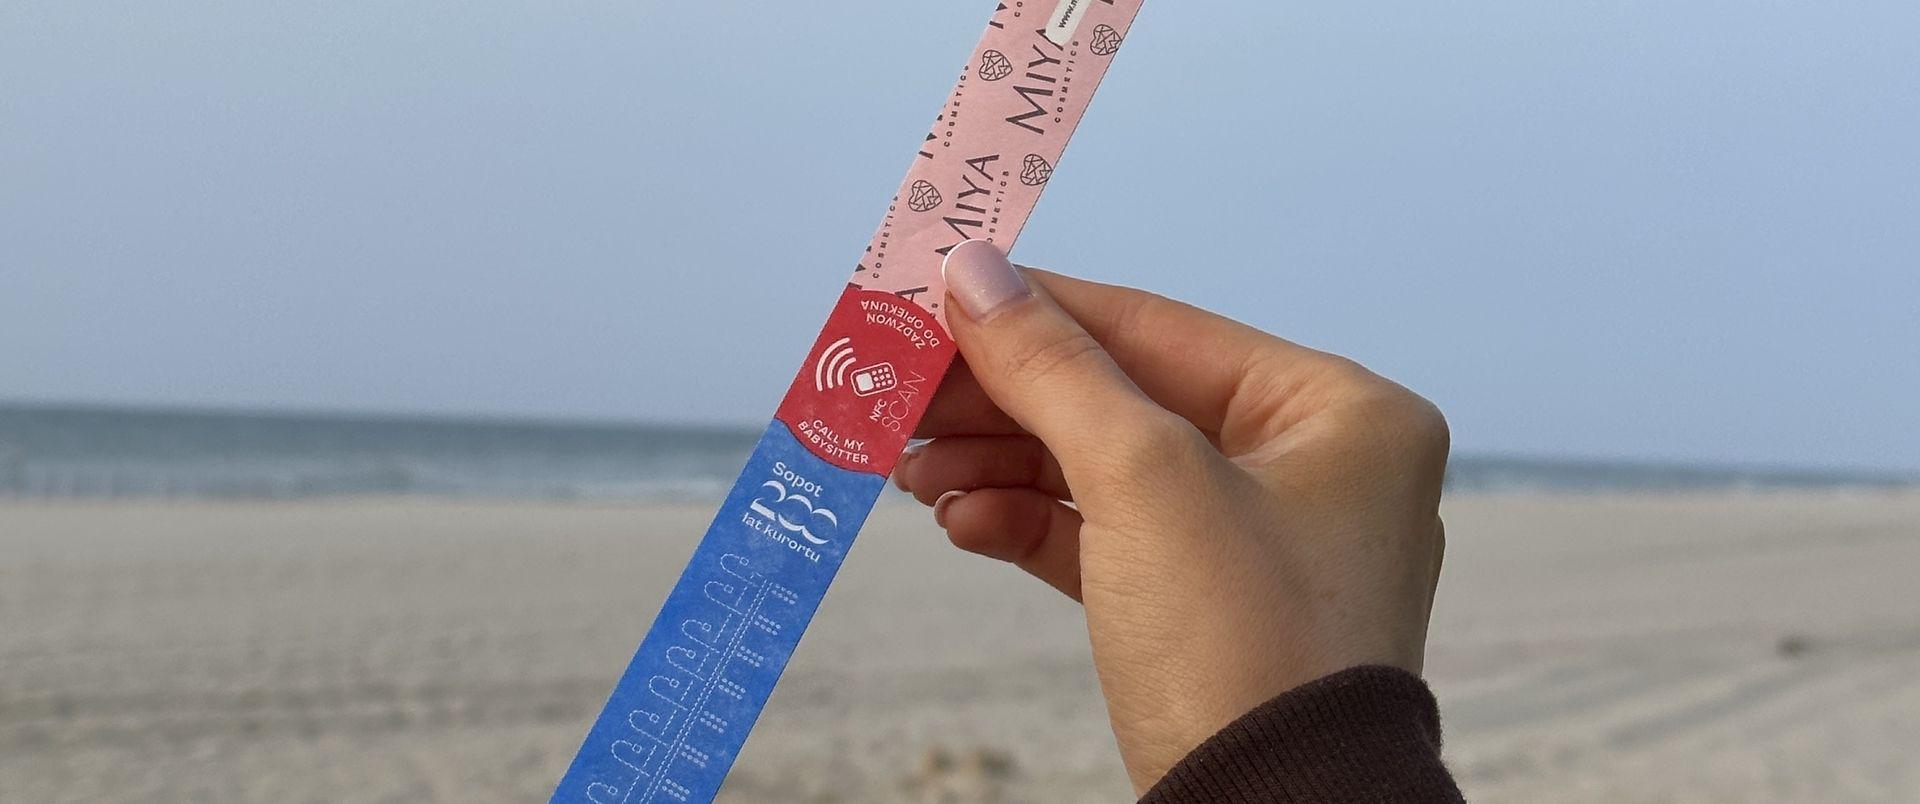 Miya wspiera bezpieczeństwo plażowania w Sopocie